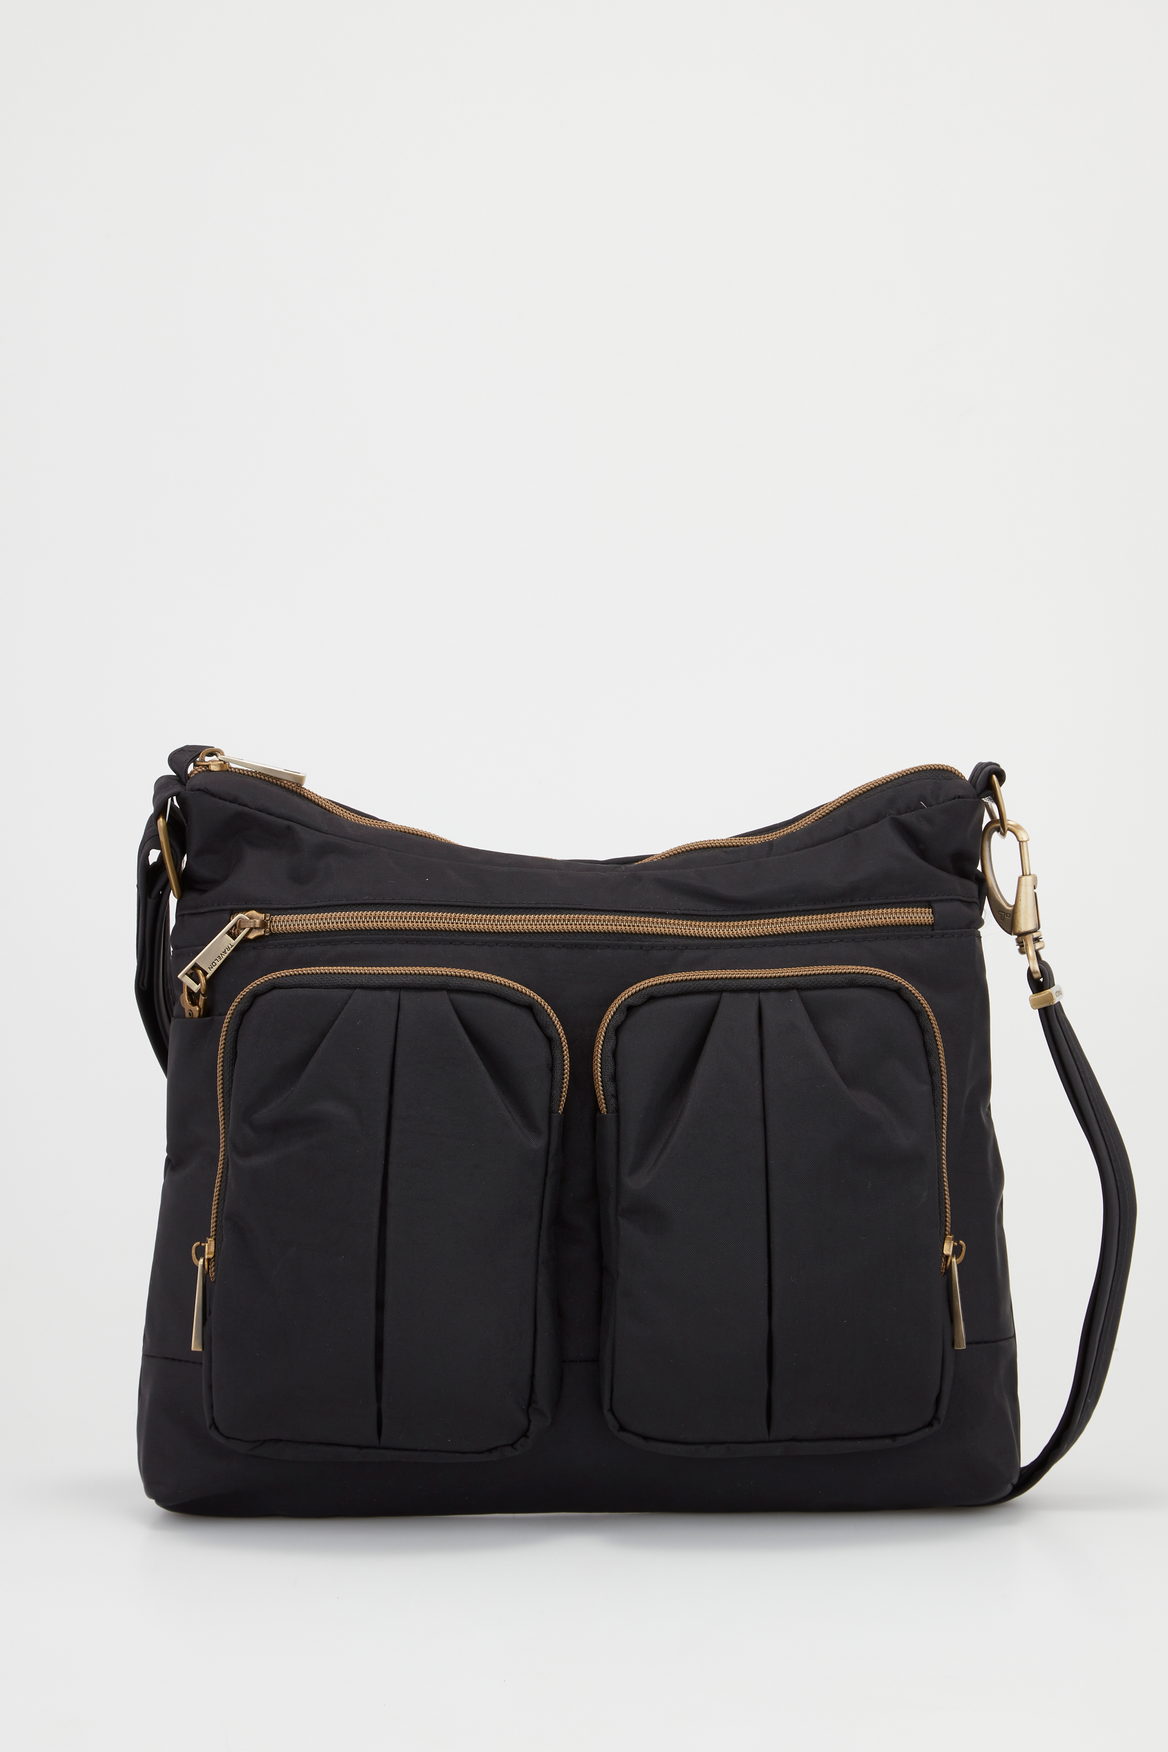 Anti Theft Shoulder Bag Black